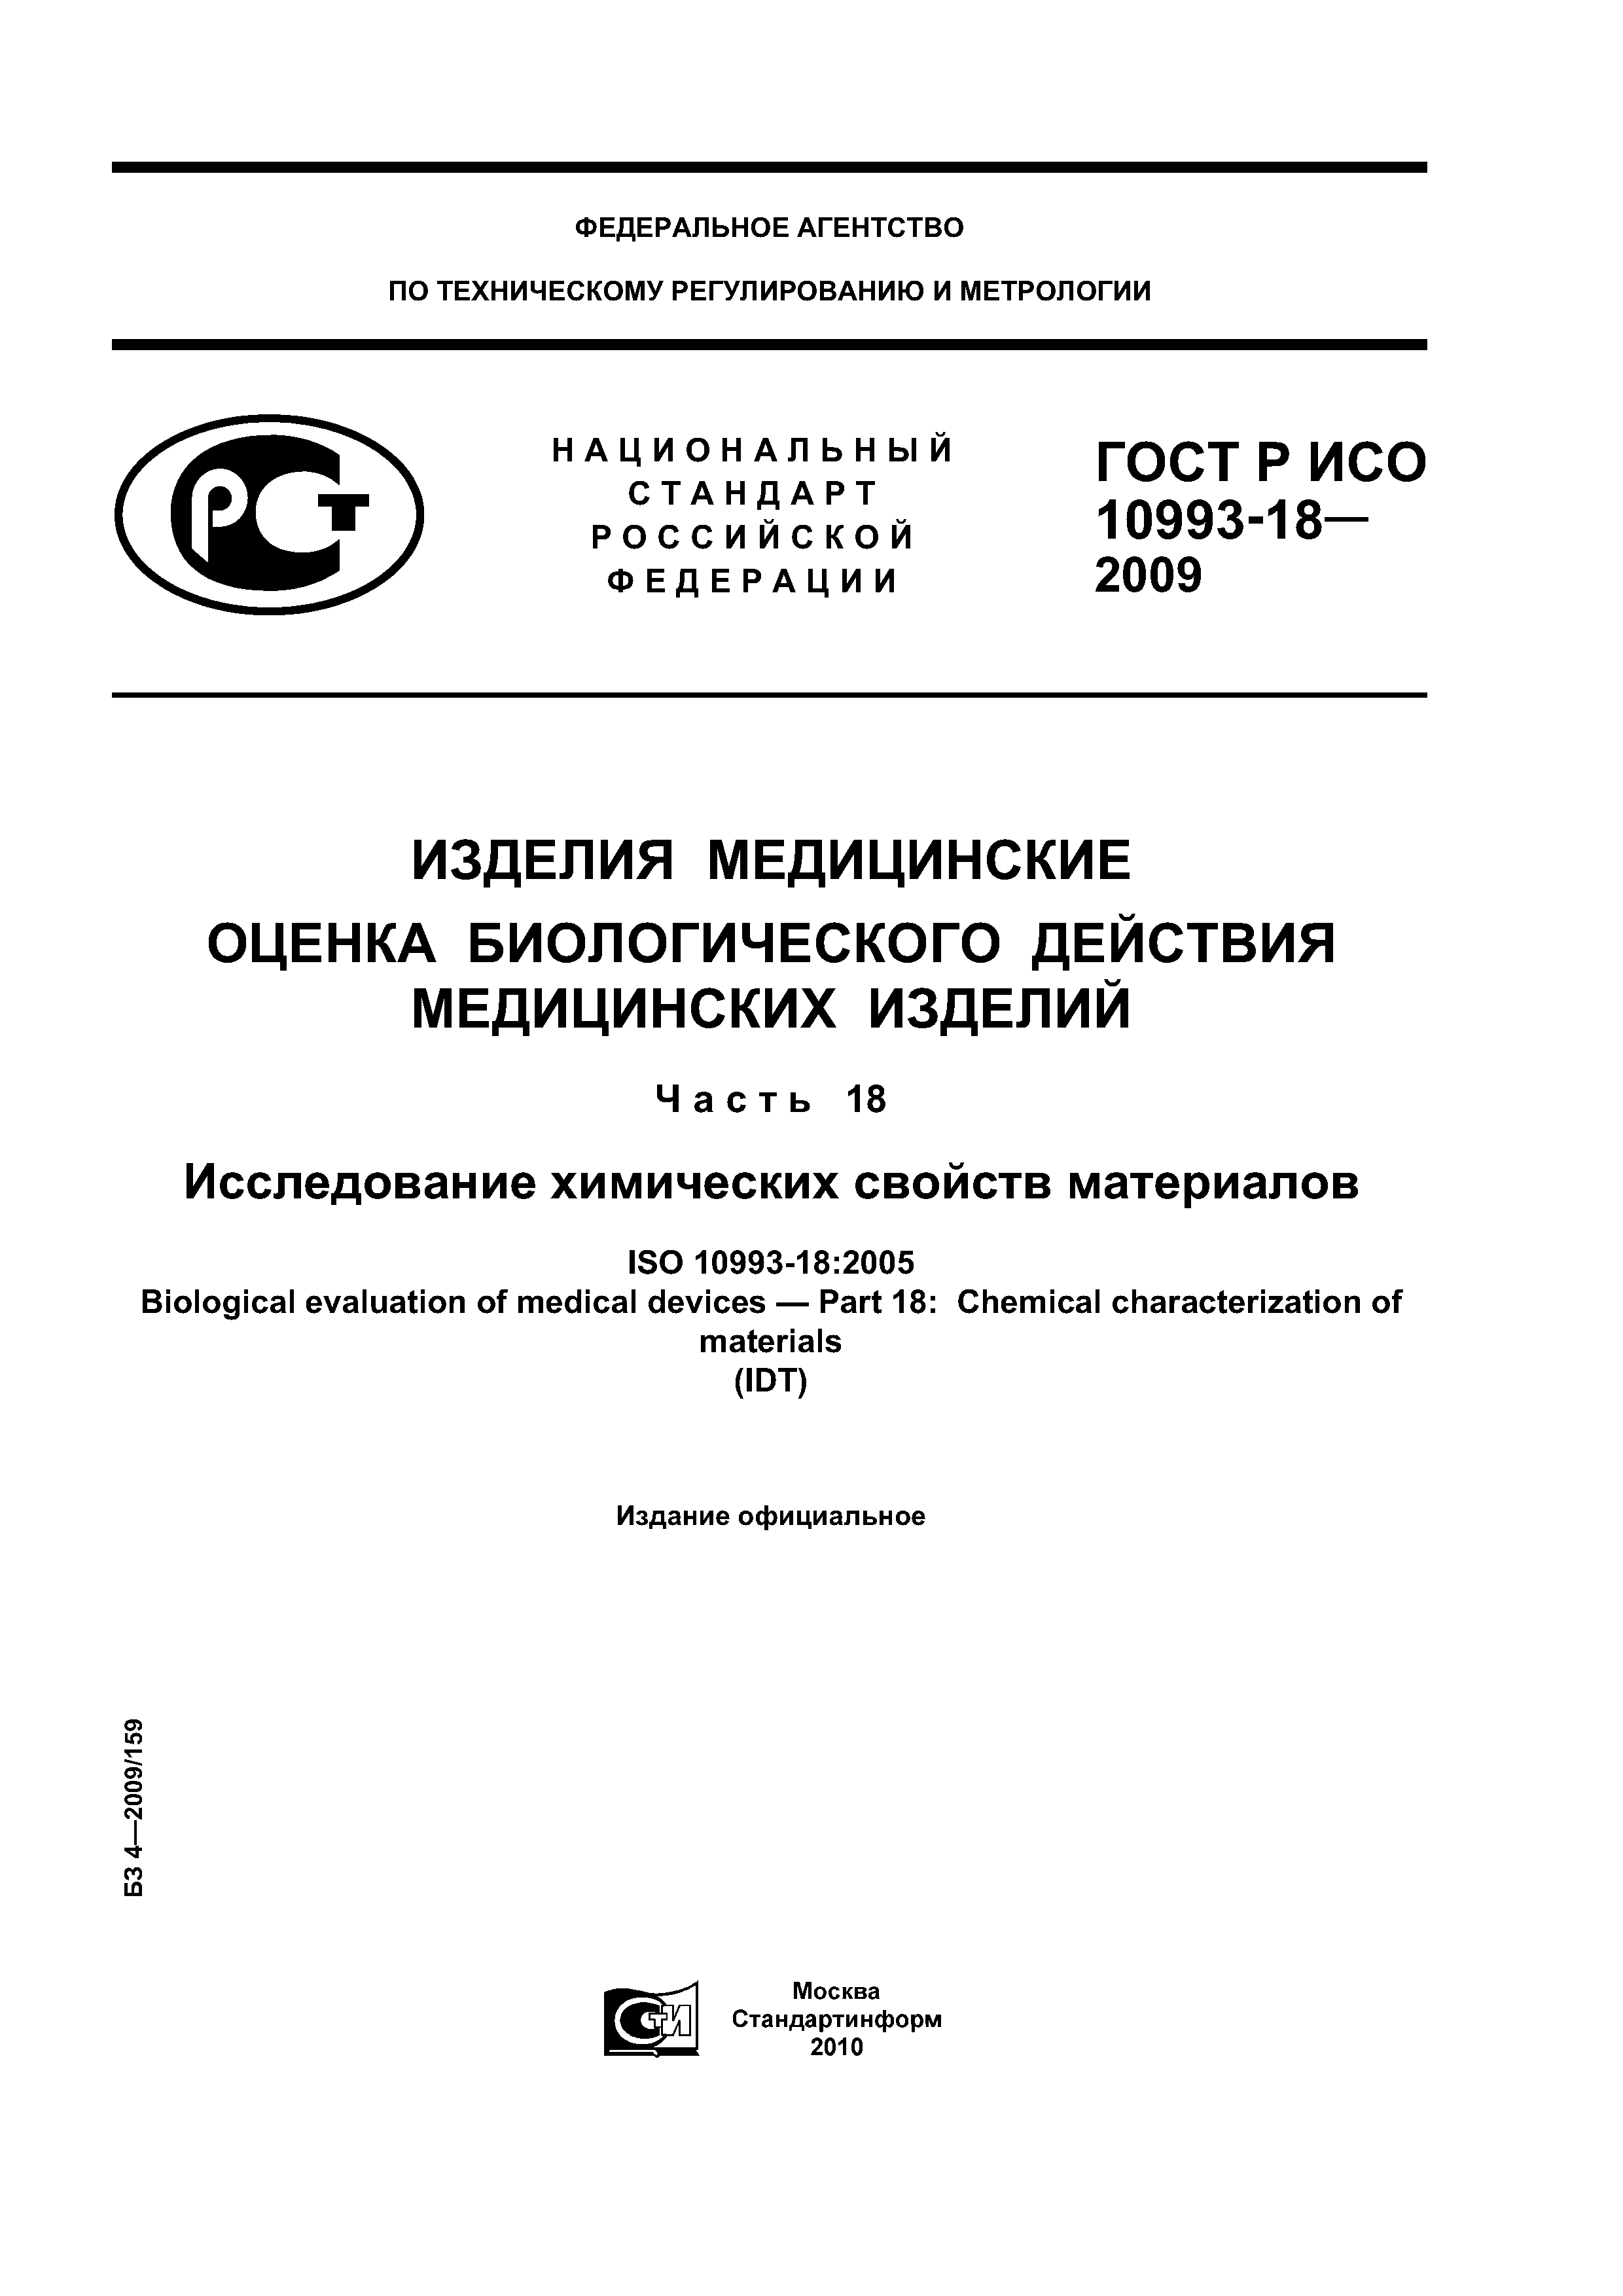 ГОСТ Р ИСО 10993-18-2009